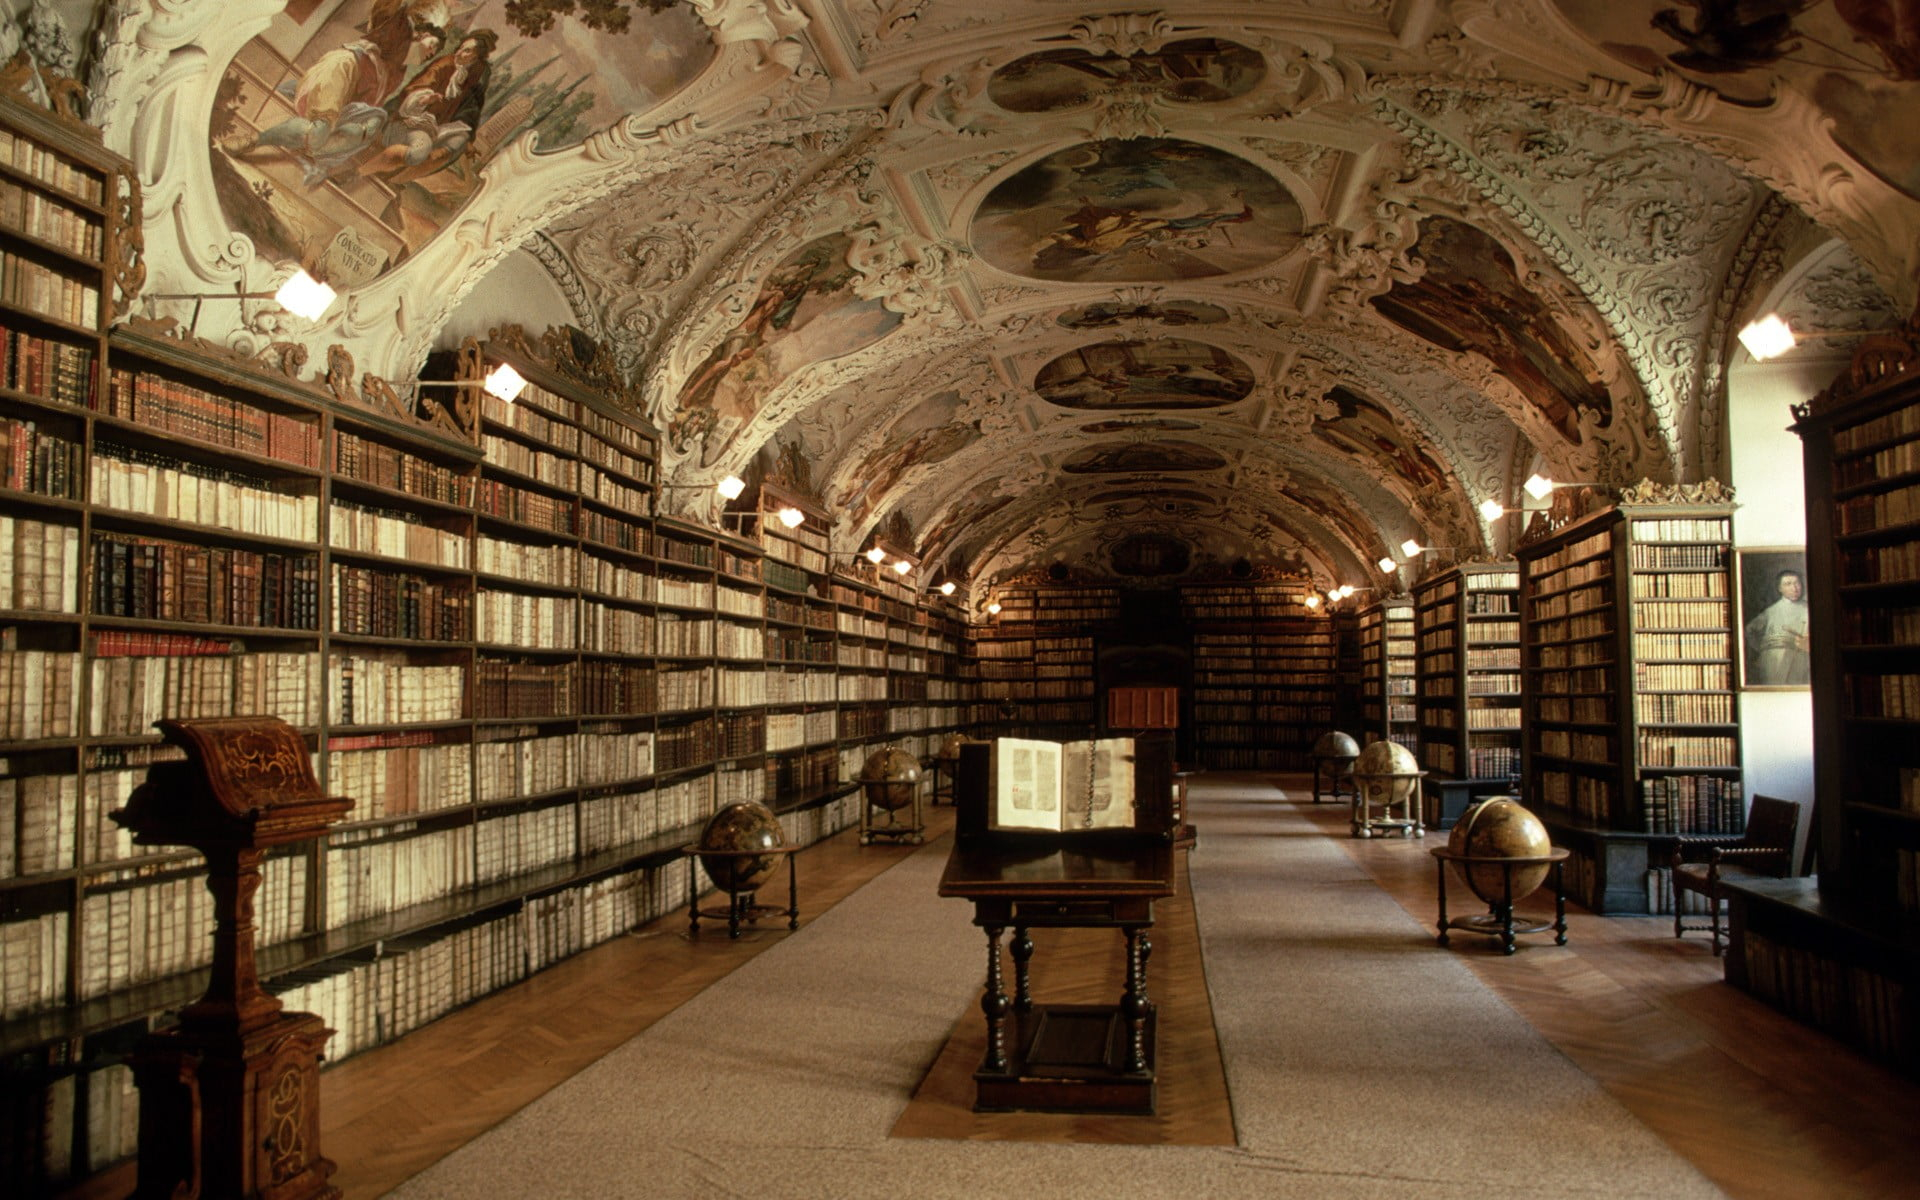 Library interior, books, shelves, globes, Prague, Czech Republic wallpaper